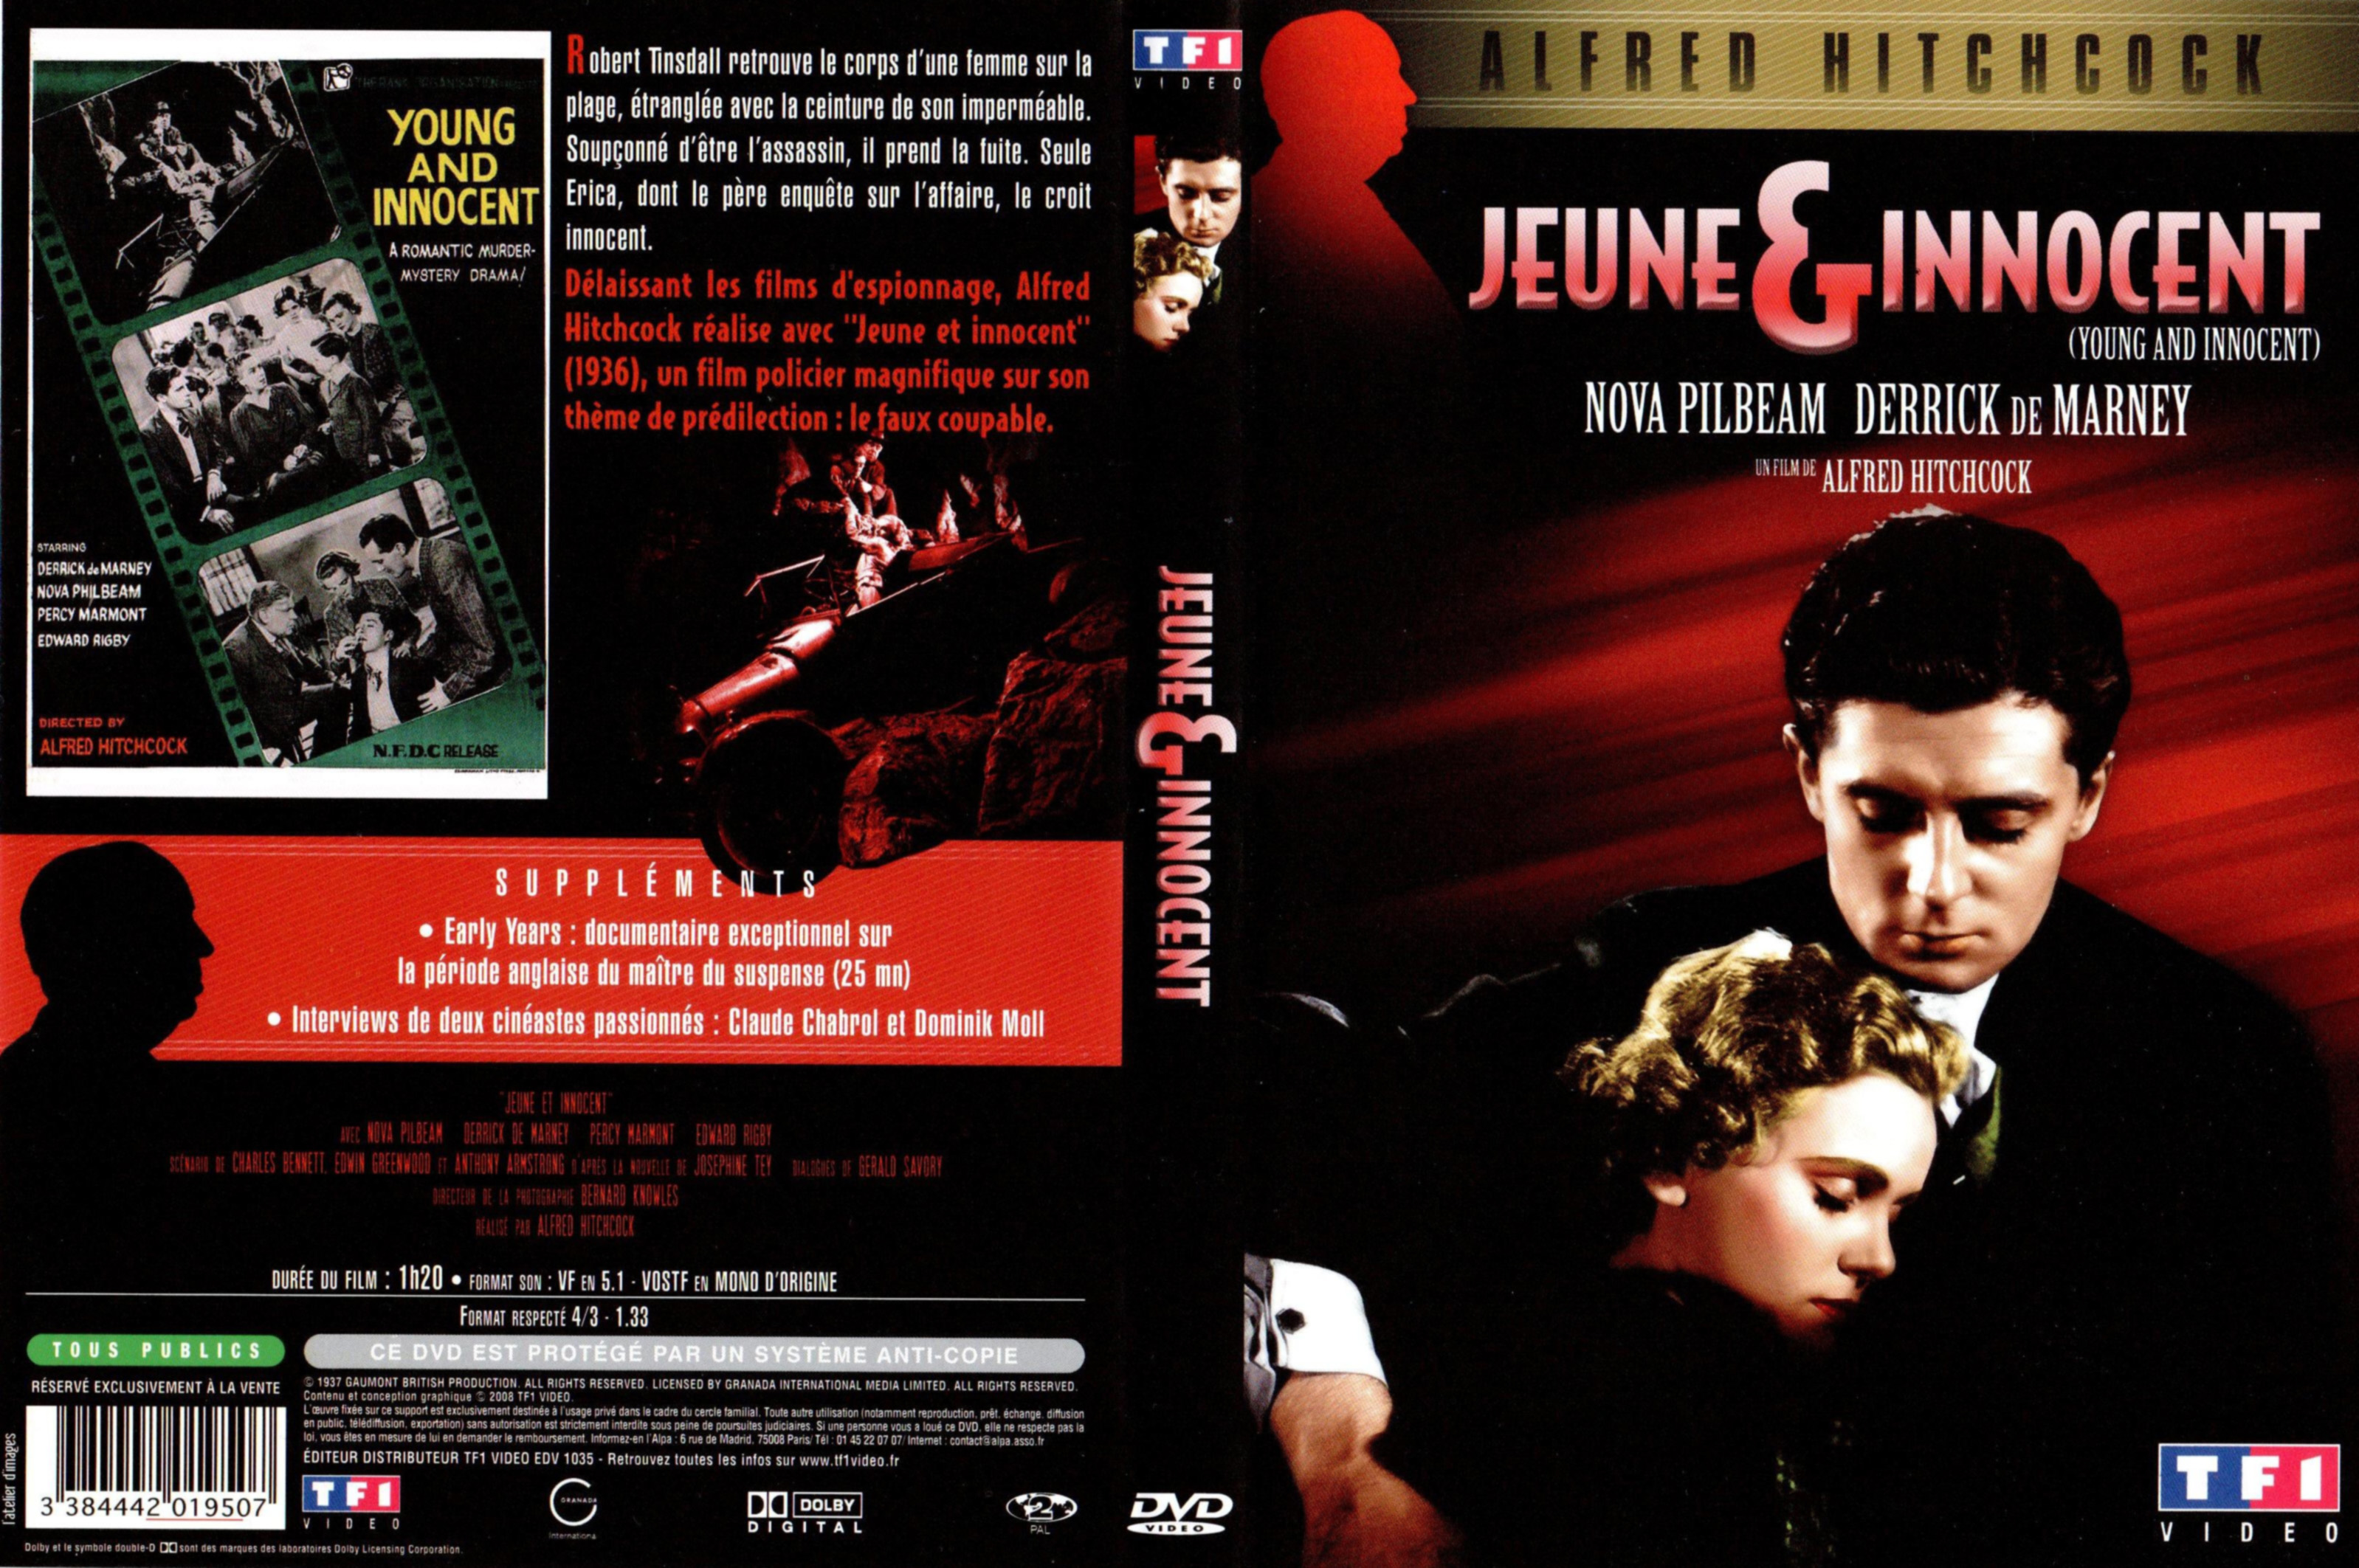 Jaquette DVD Jeune et innocent v2